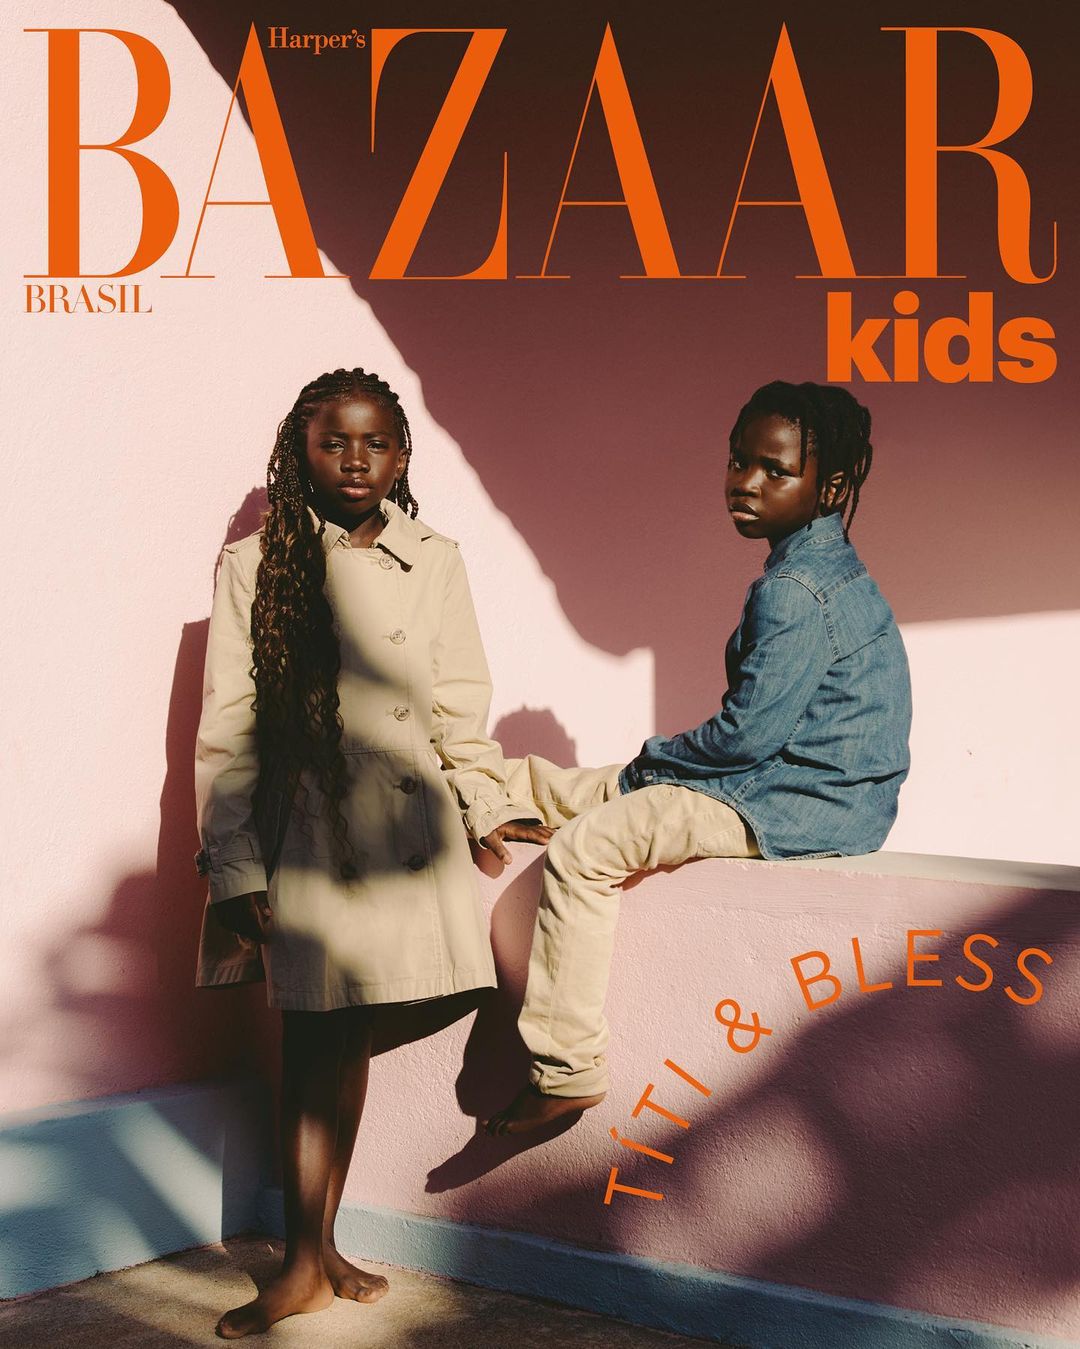 Bazaar Kids traz os irmãos Títi e Bless na capa da edição de novembro